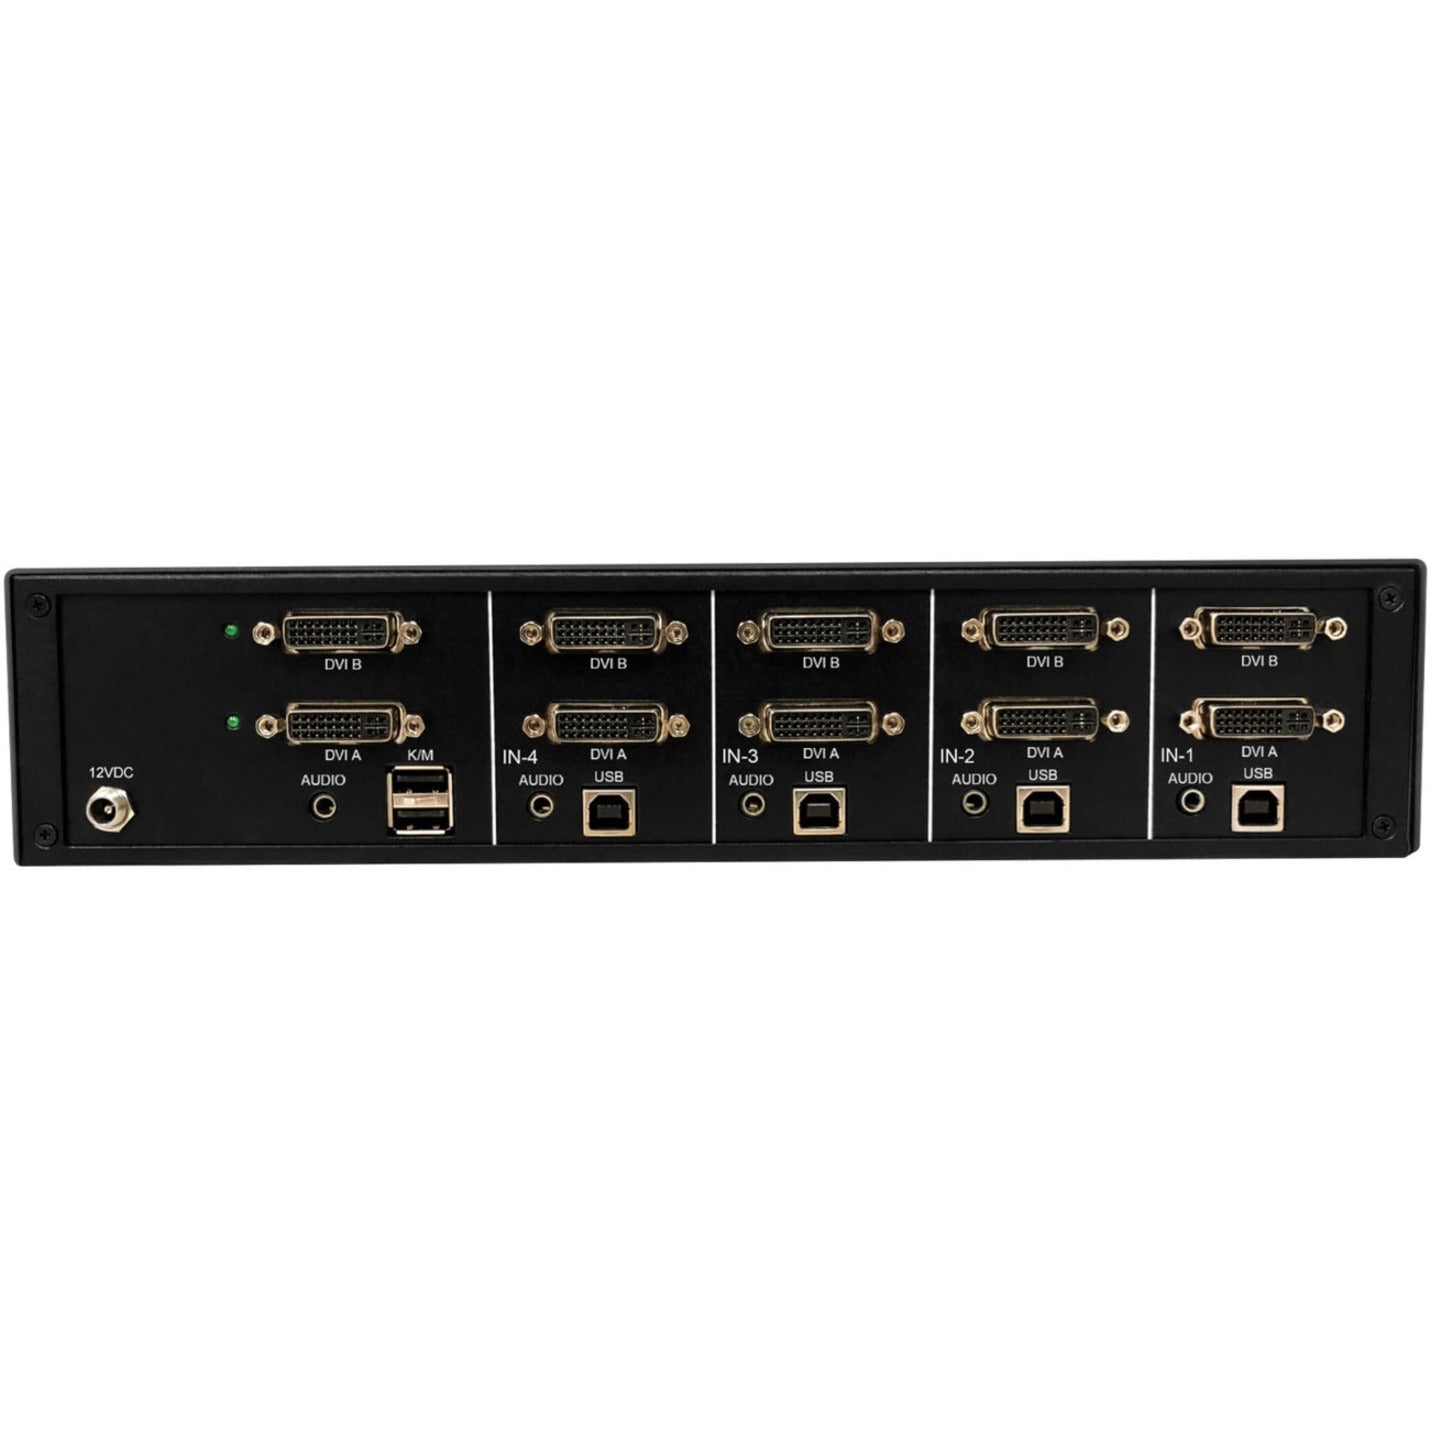 Tripp Lite B002-DV2A4-N4 Commutateur KVM sécurisé 4 ports Double tête DVI vers DVI NIAP PP4.0 TAA Résolution vidéo maximale 2560 x 1600 Garantie de 3 ans